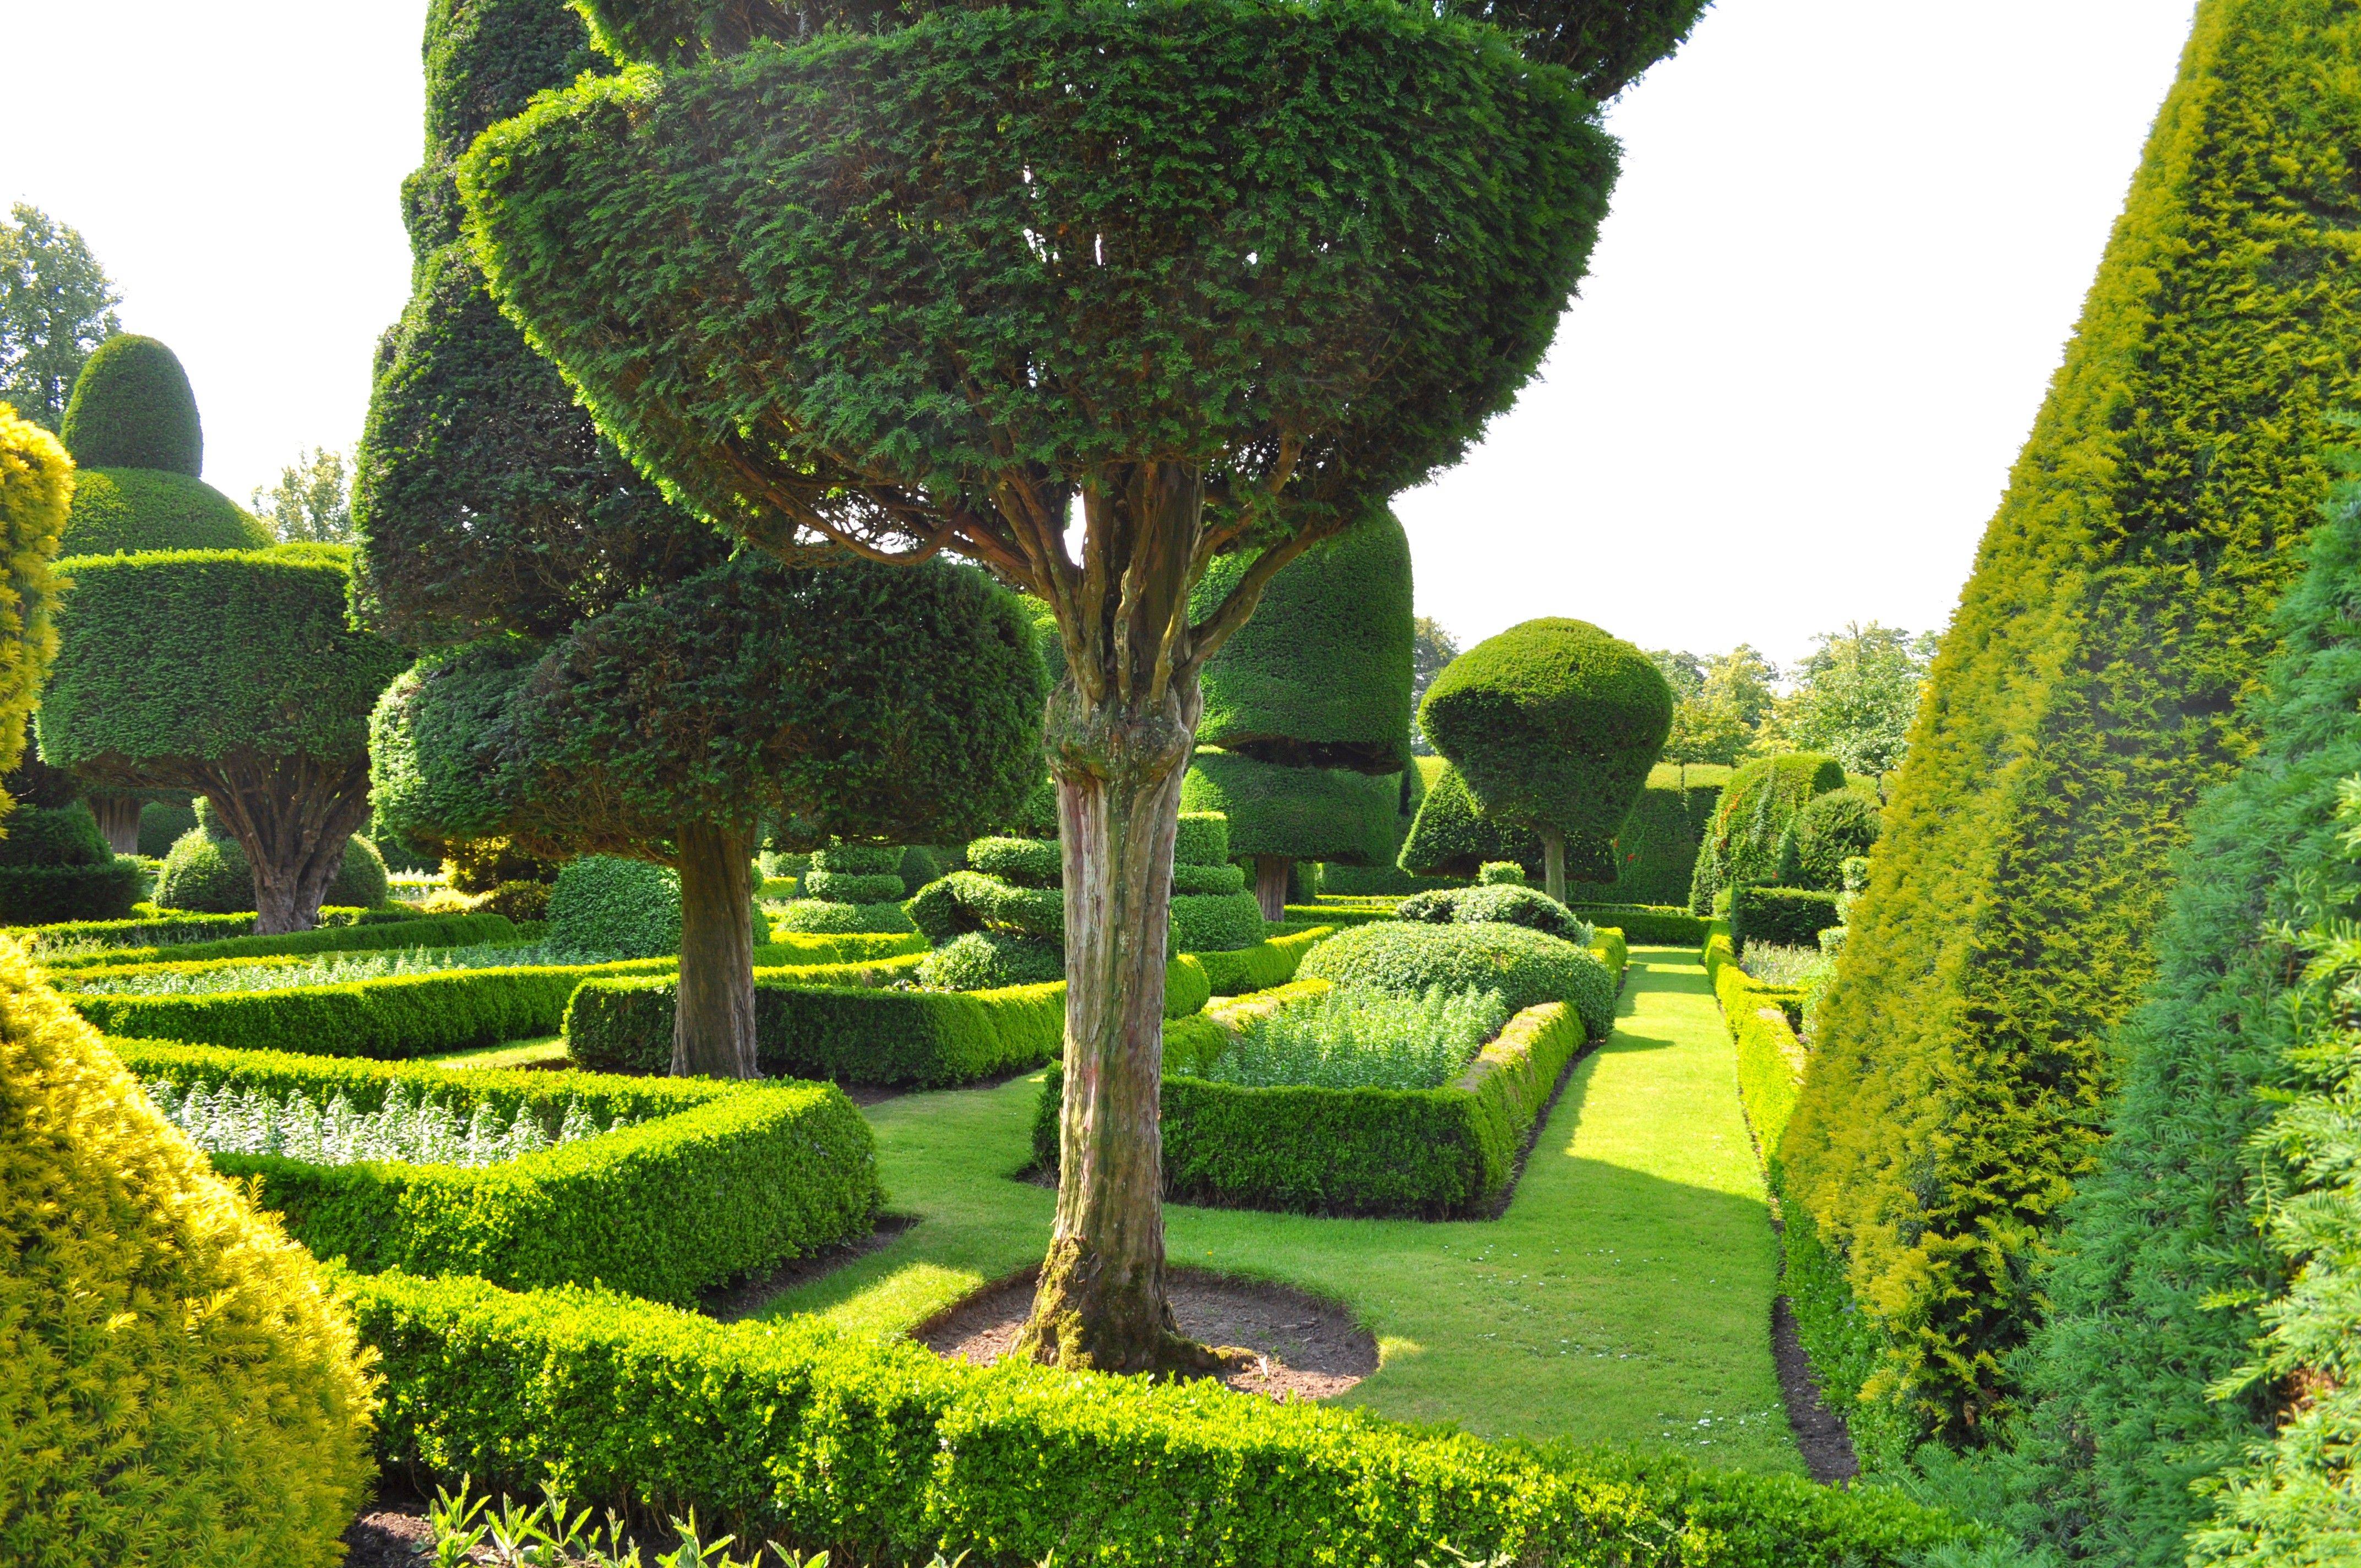 Топиарный сад левенс холл. англия